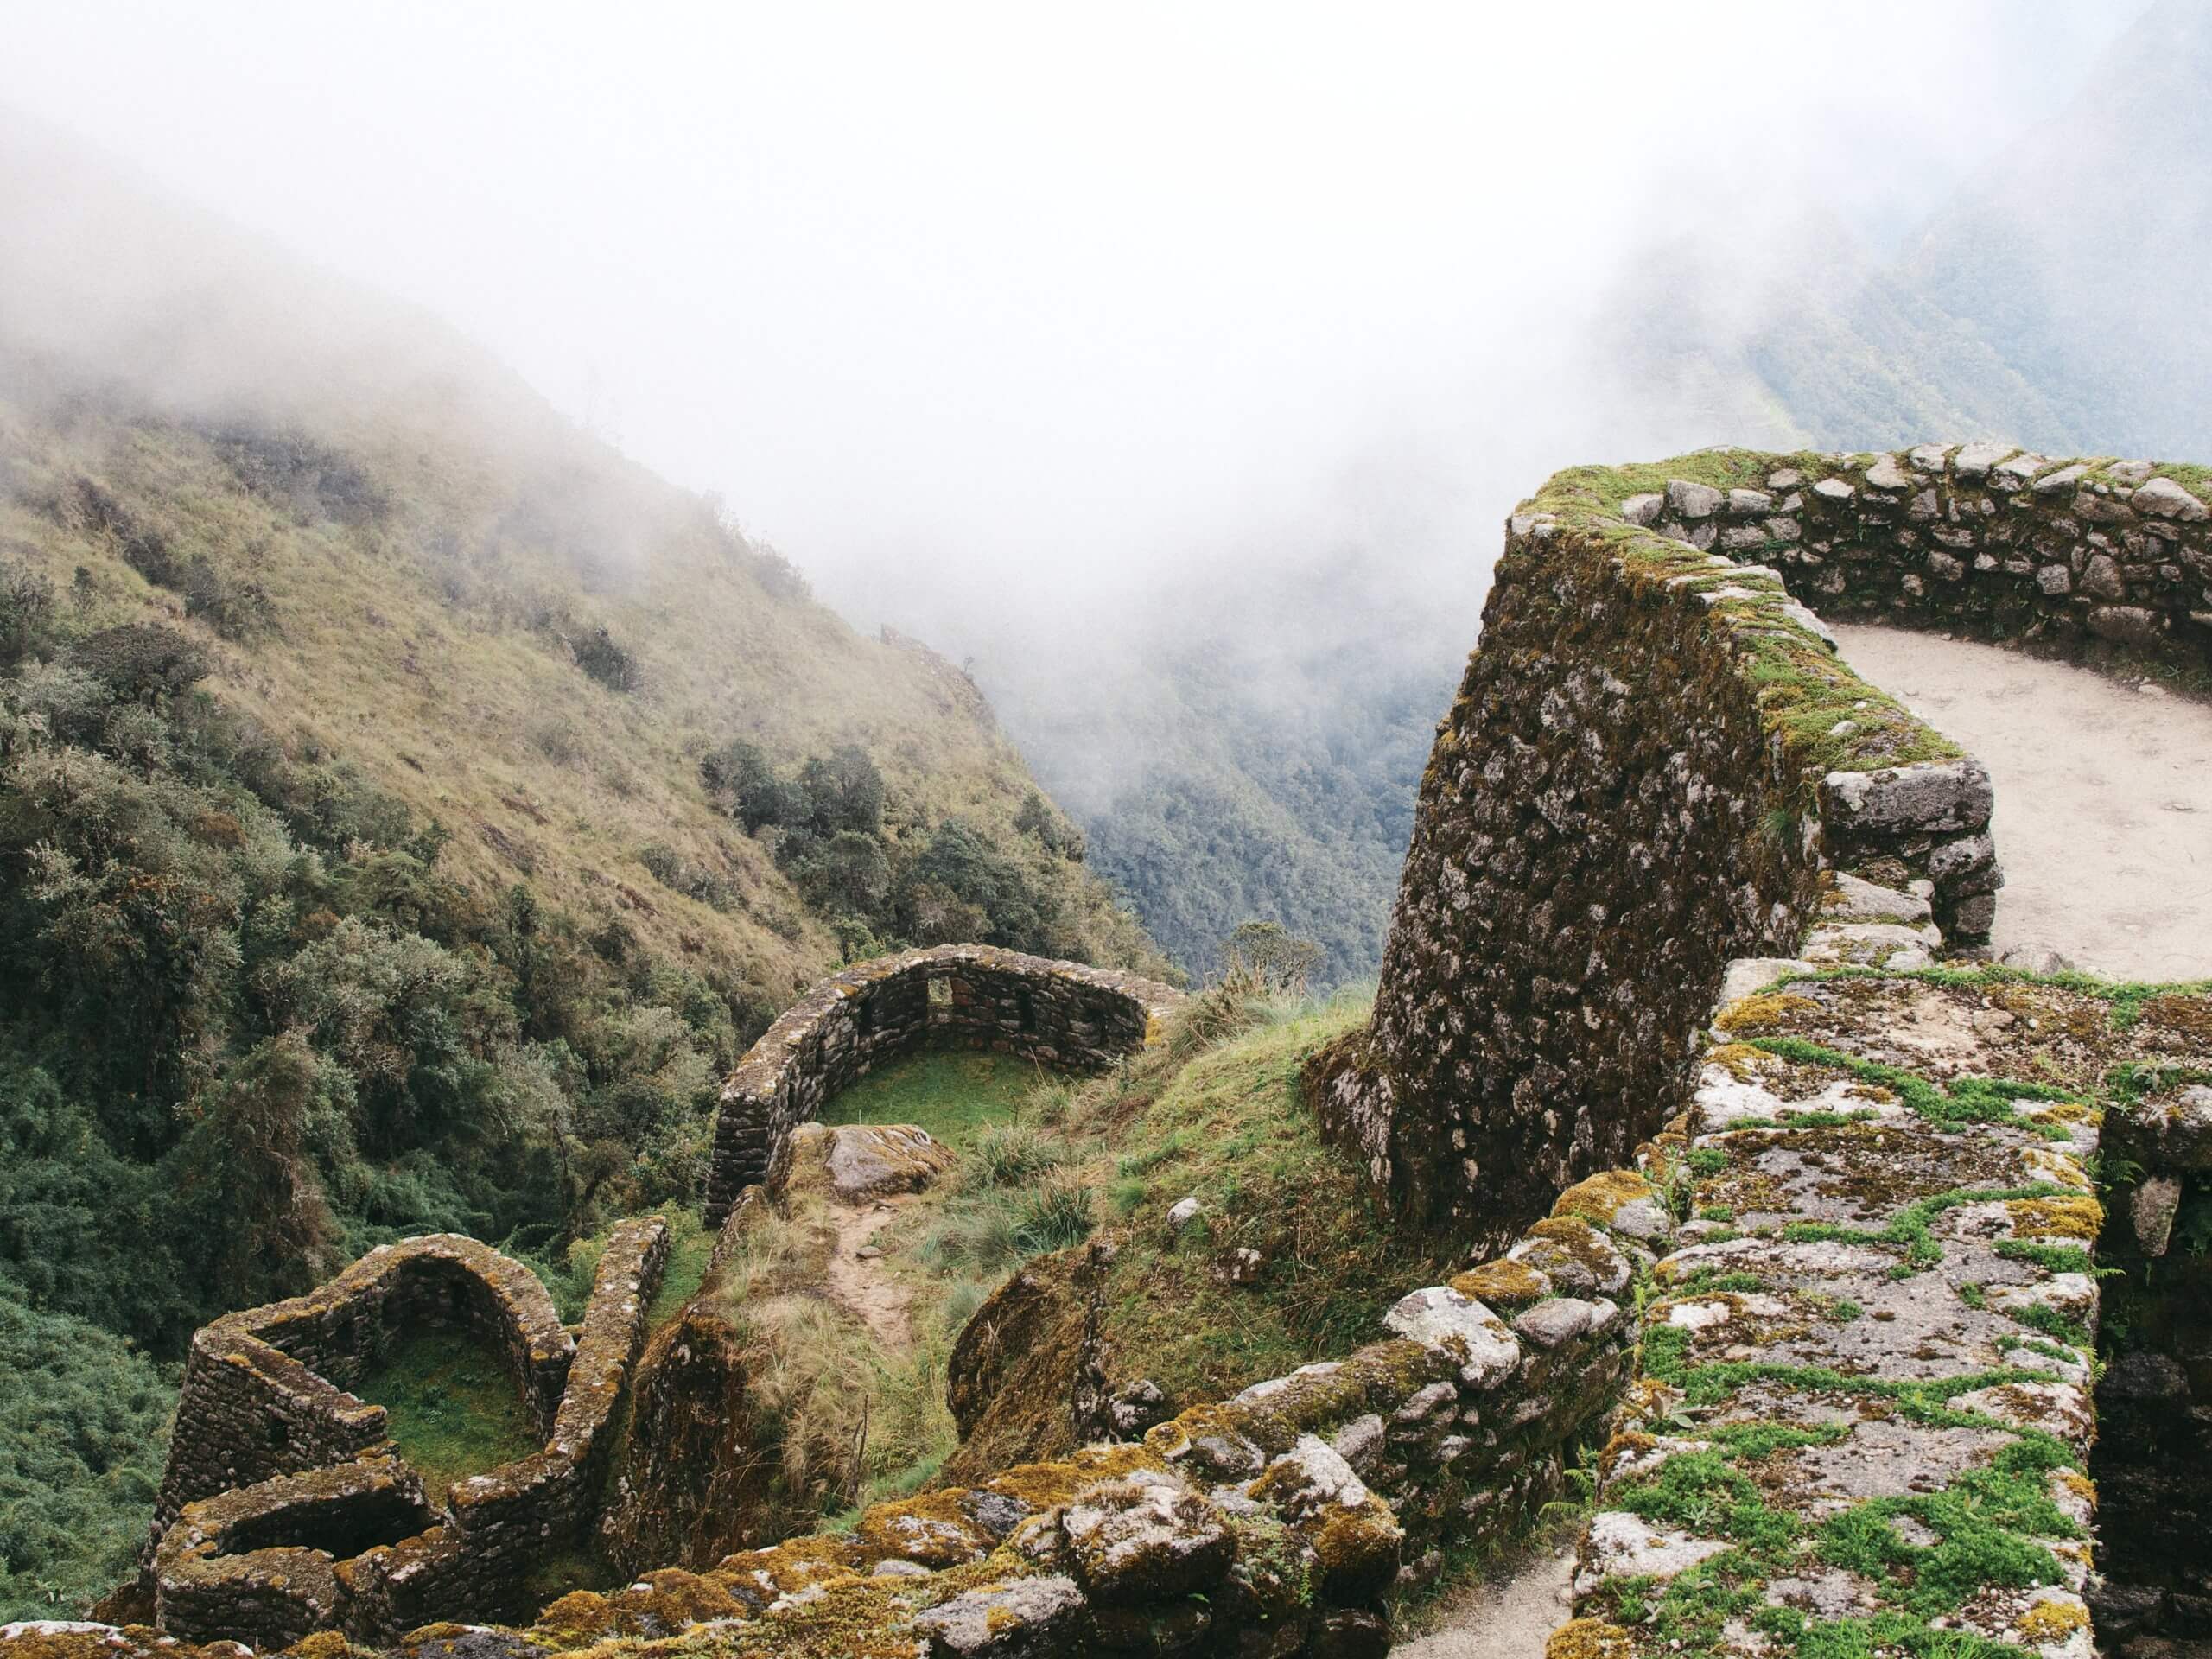 Inca complex in Peru